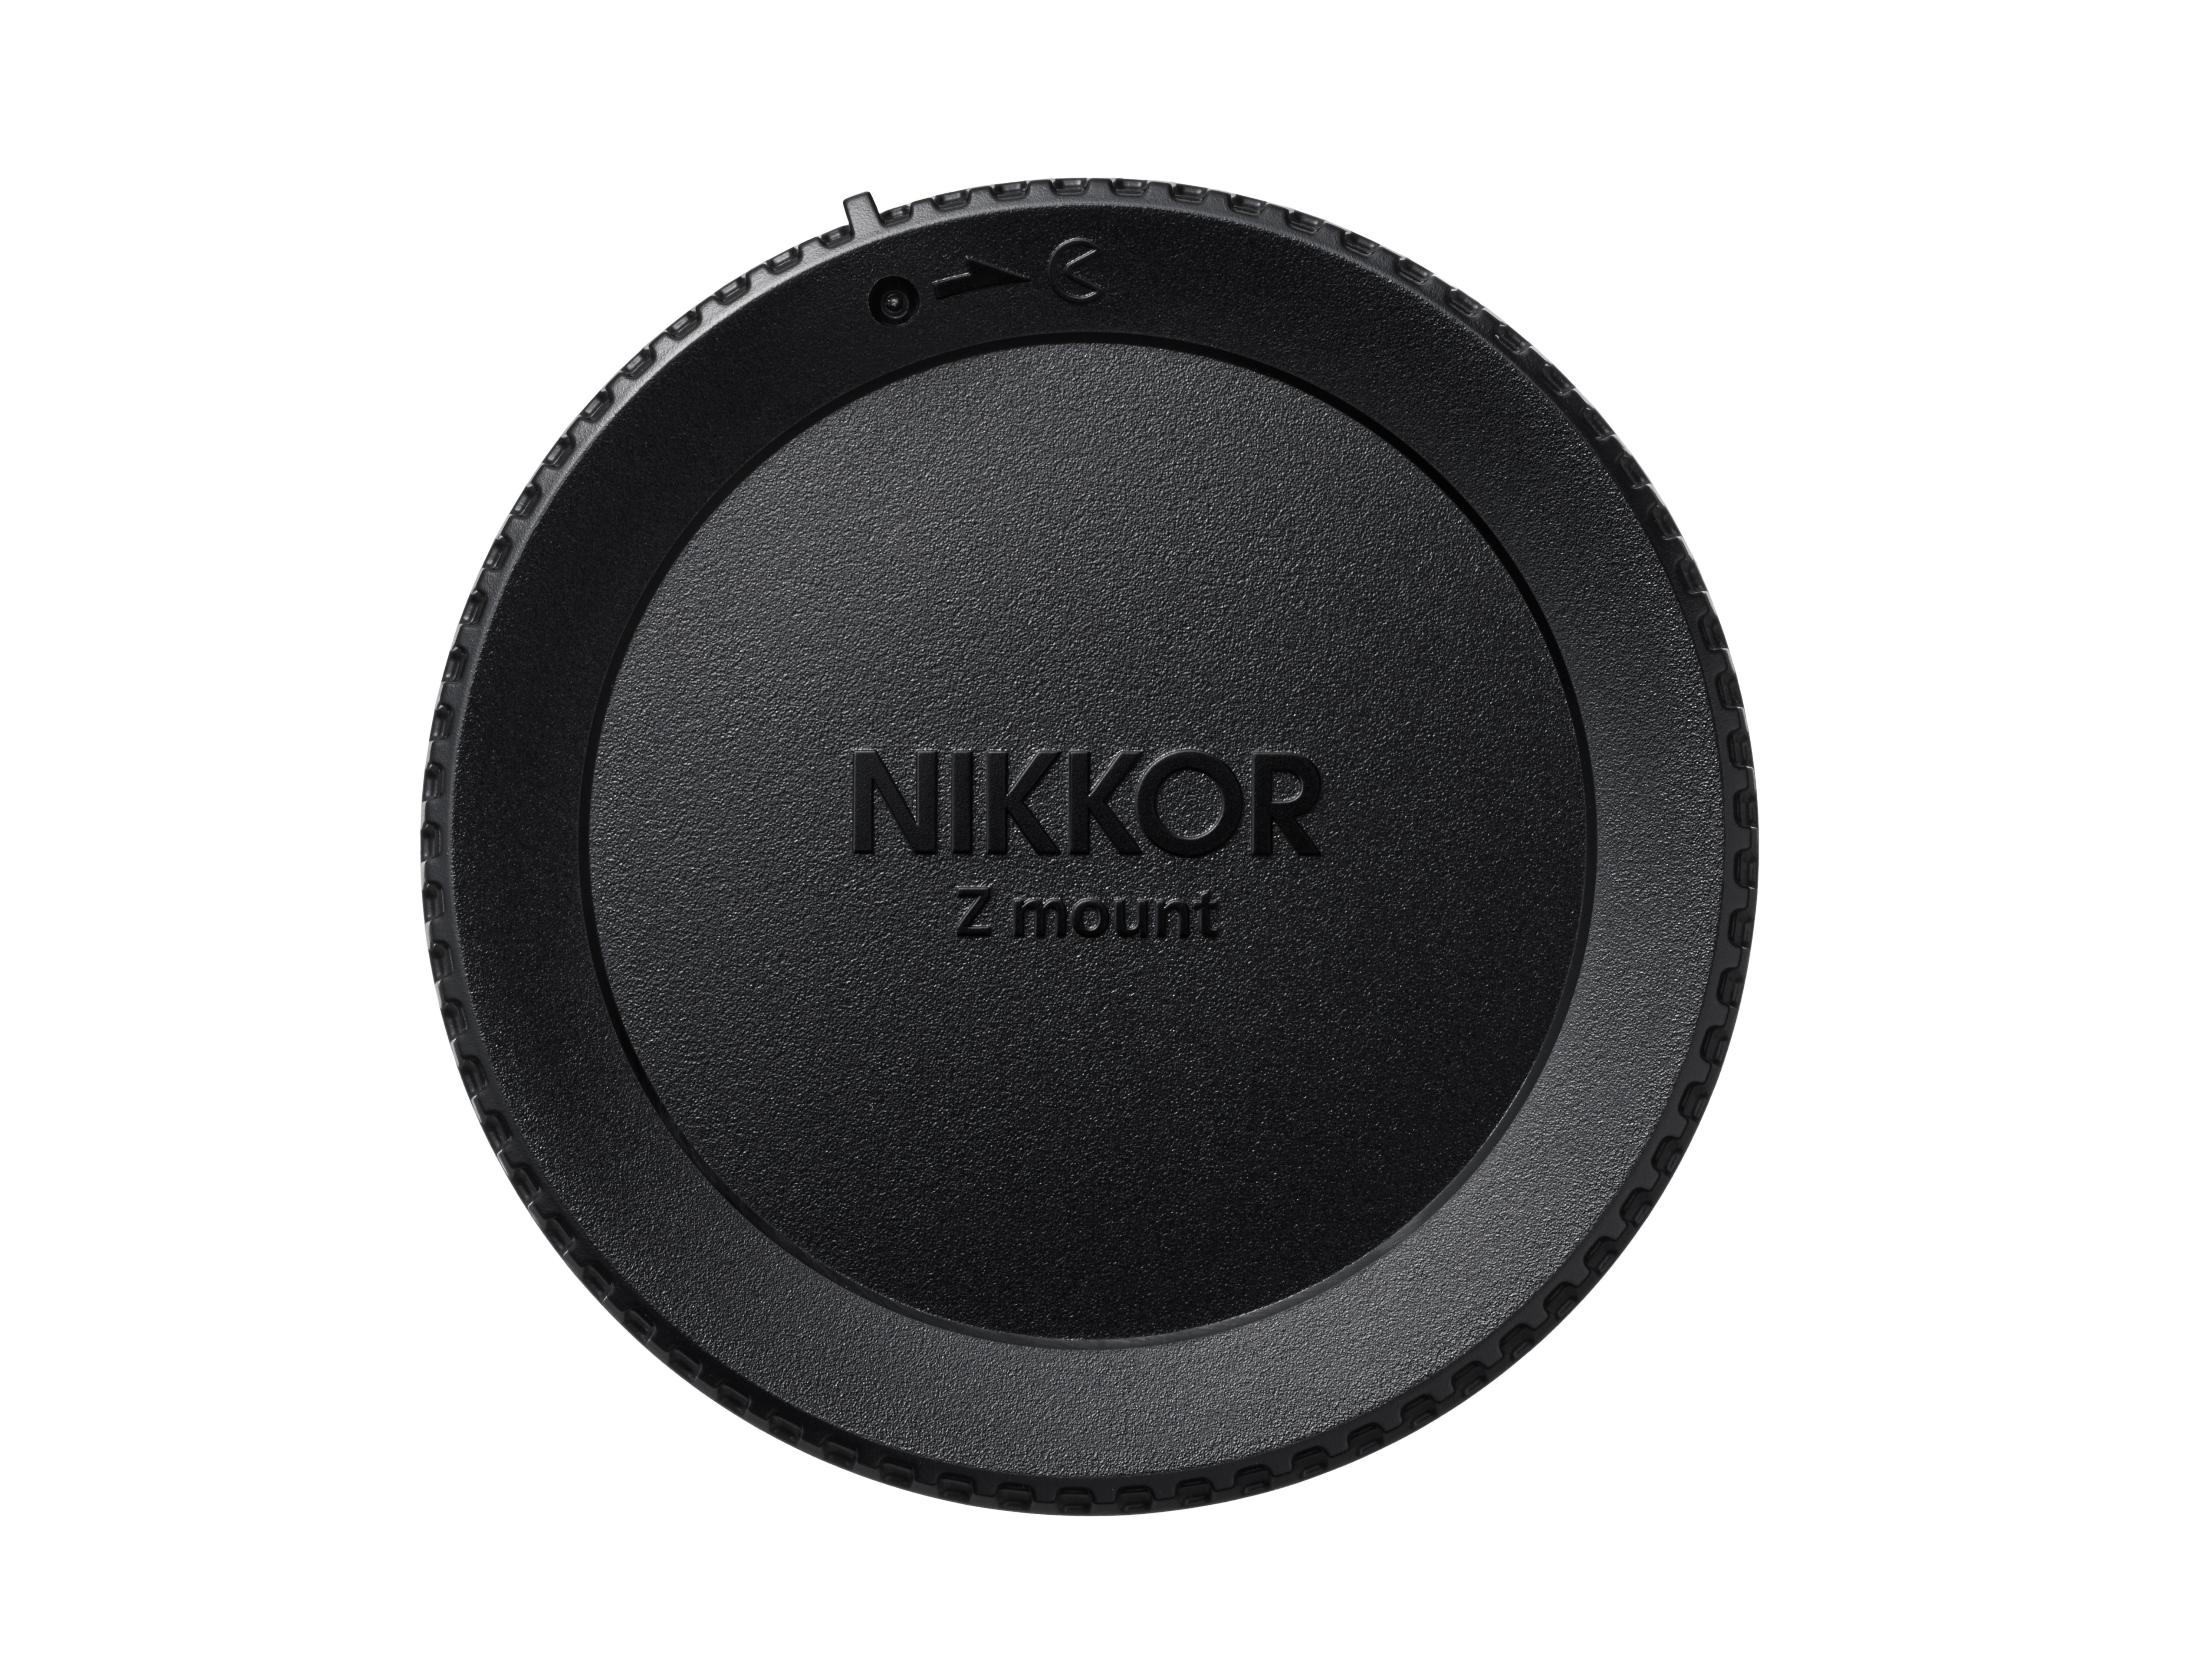 Nikon NIKKOR Z DX 24mm f1.7 Lens